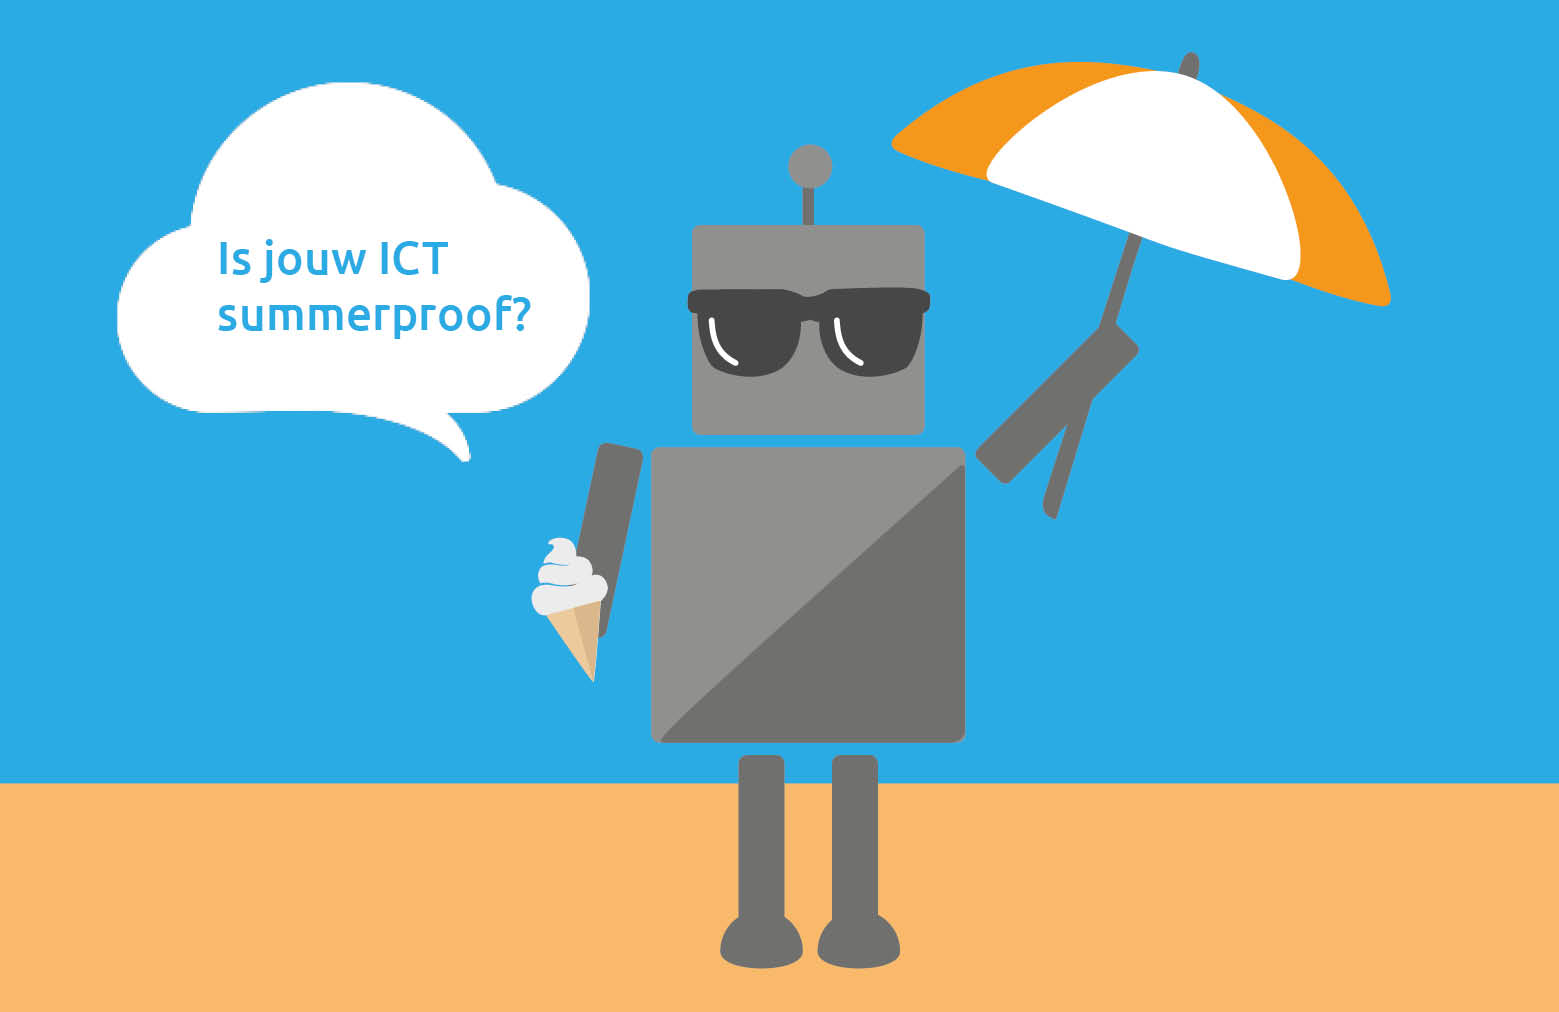 Maak jouw ICT summerproof in 10 tips!